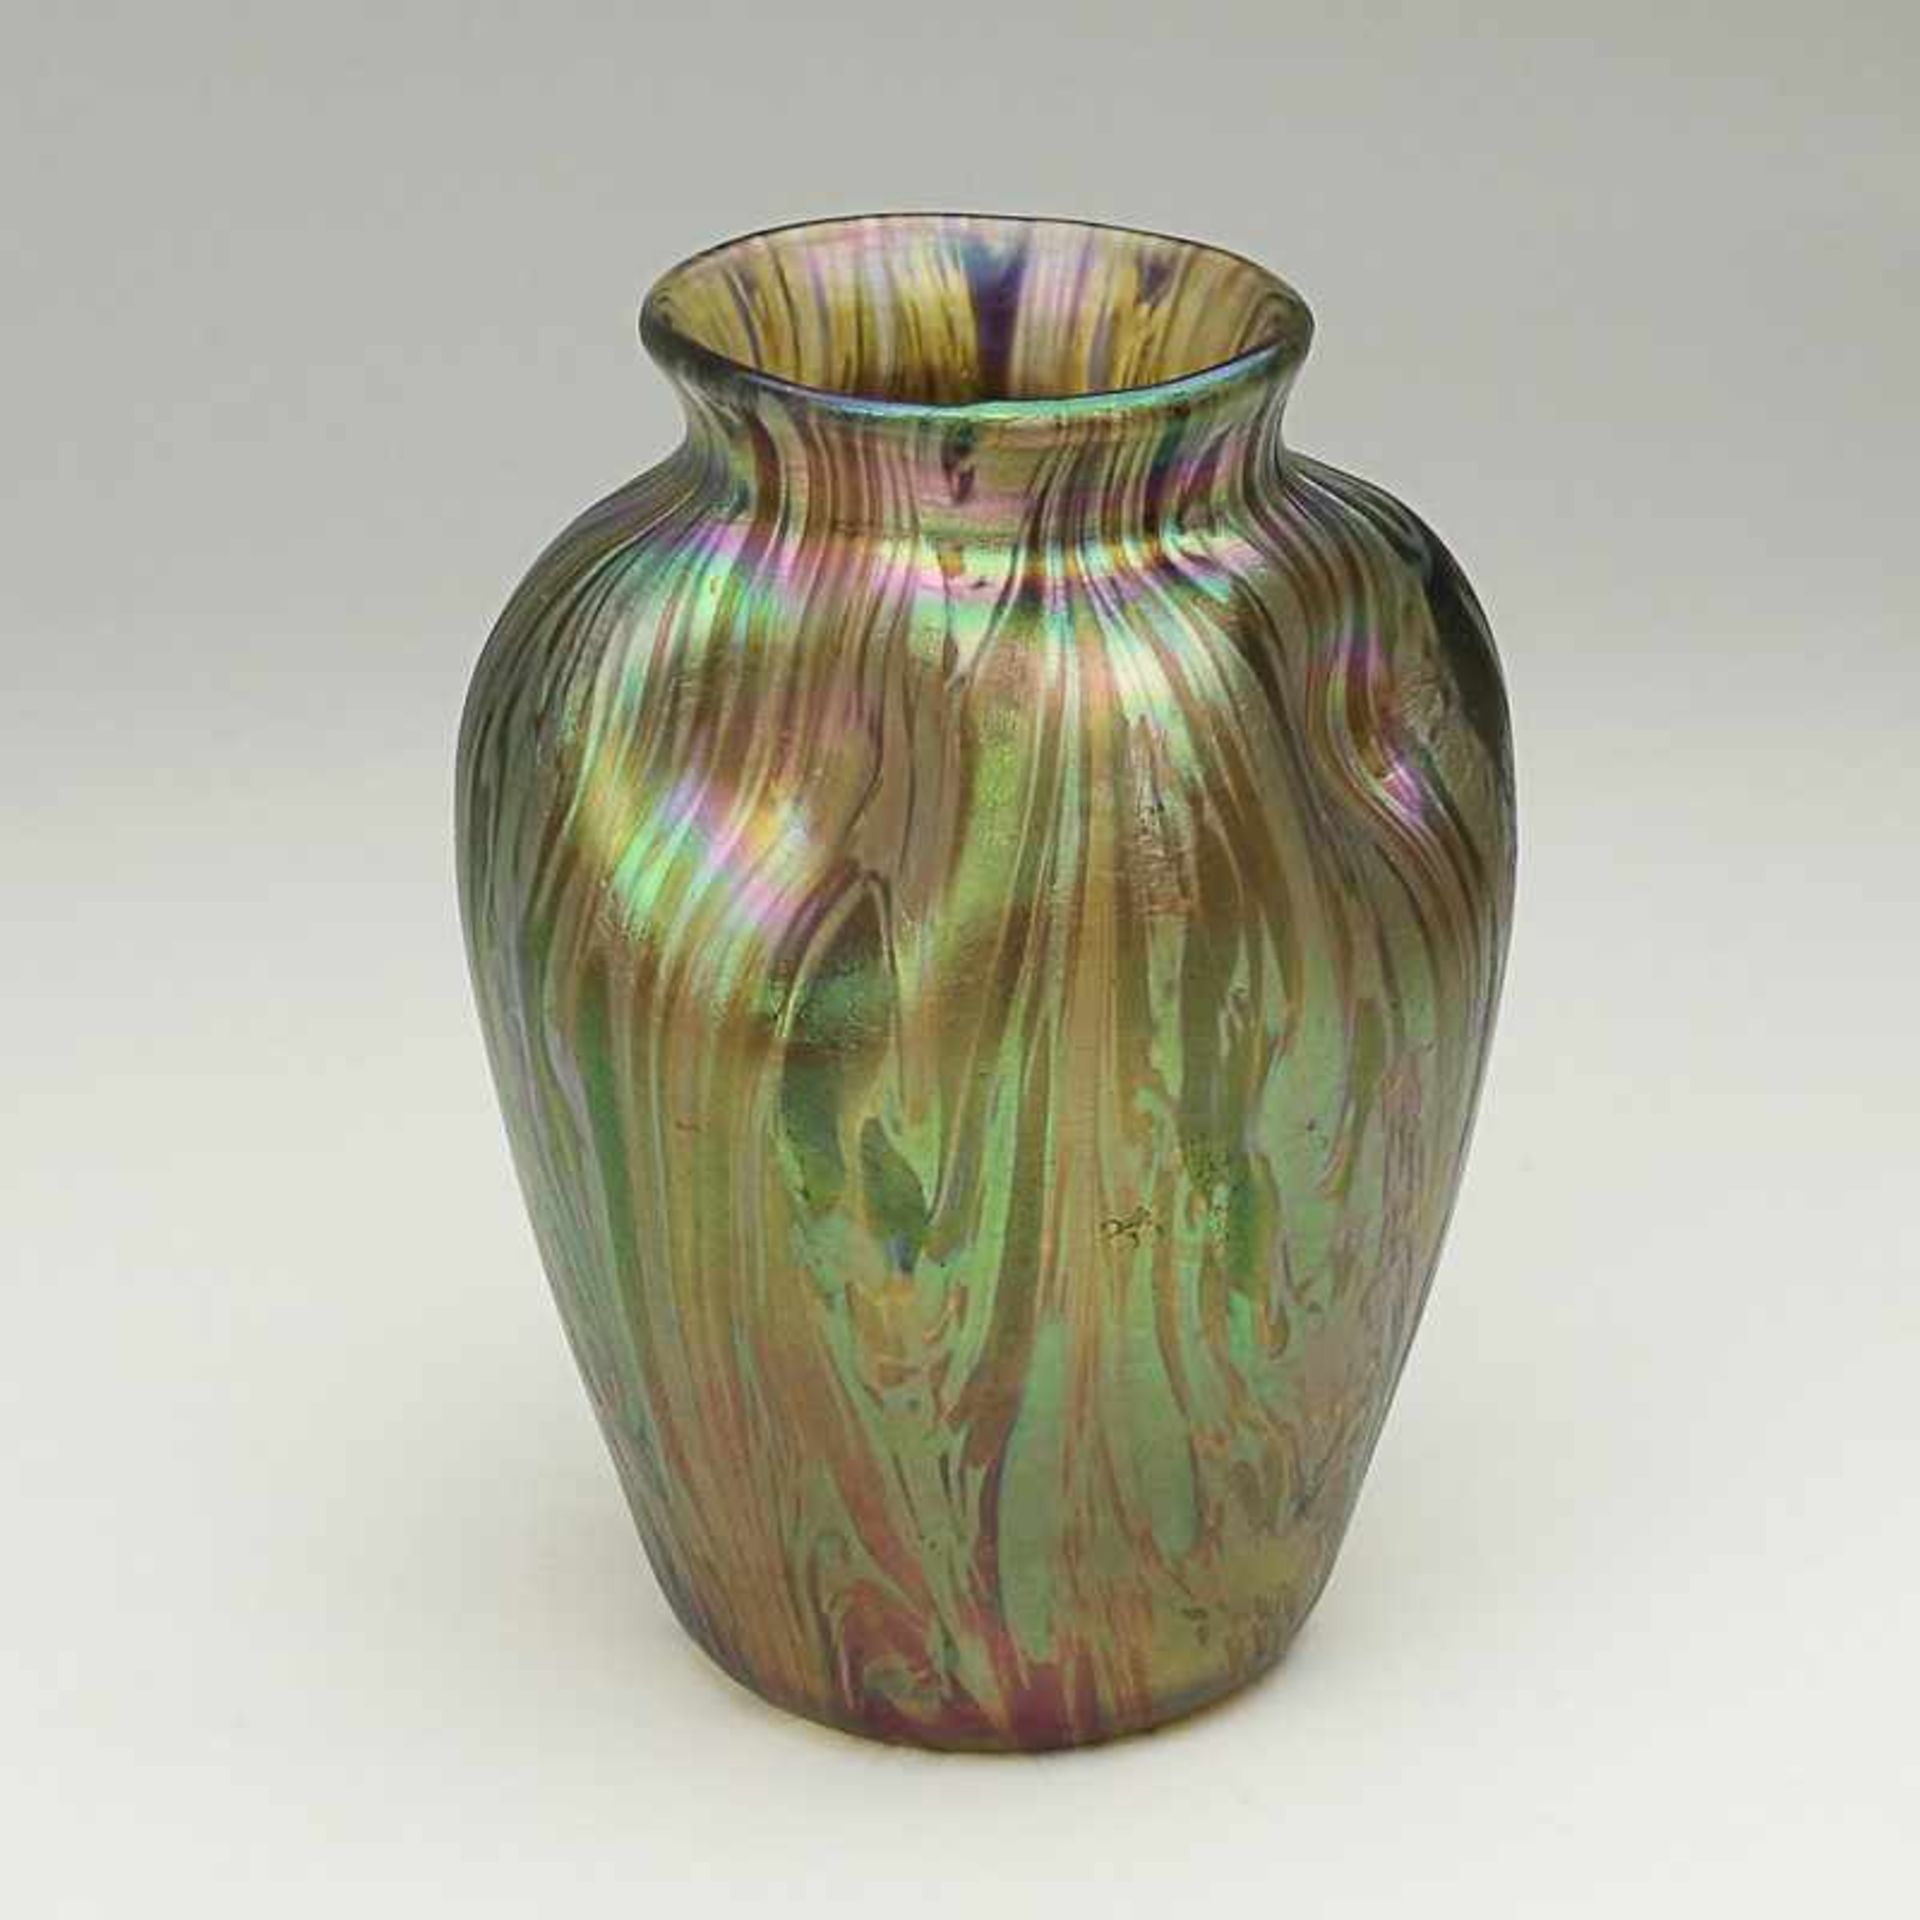 Loetz - Vase um 1900, Loetz Wwe, Klostermühle, farbloses Glas, runder Stand, leicht gebauchter